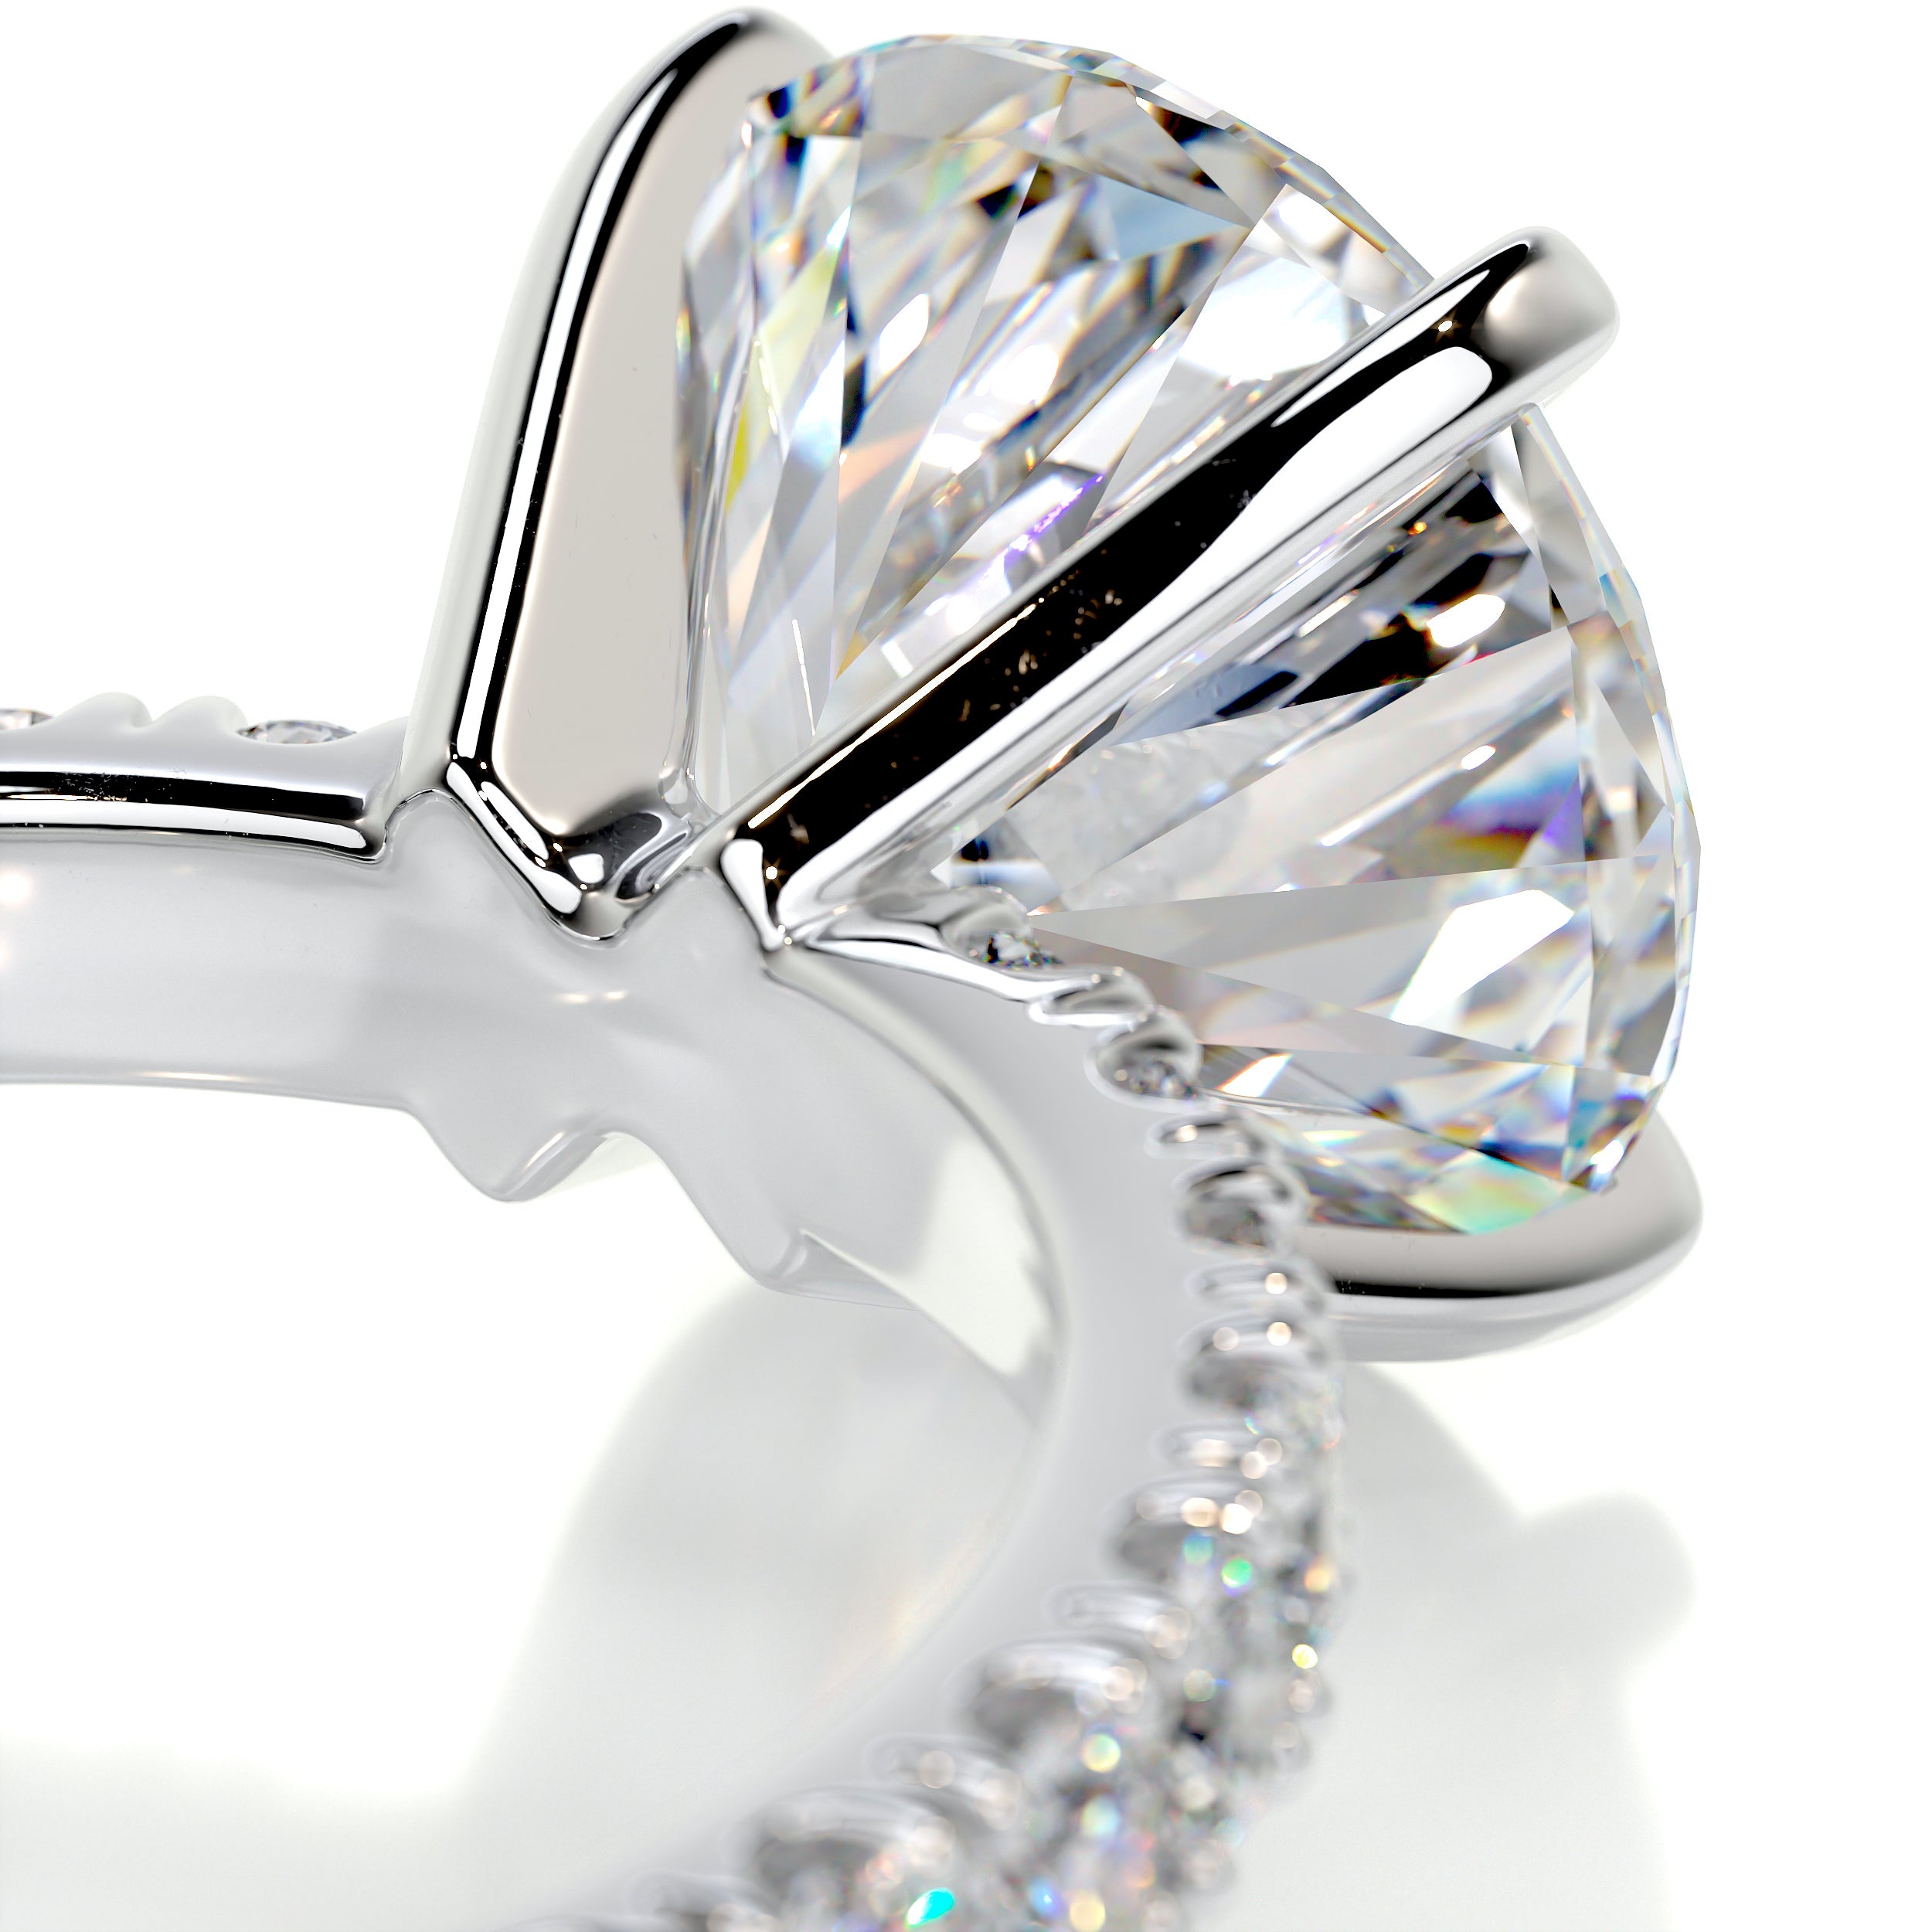 Alison Moissanite & Diamonds Ring   (3.62 Carat) -Platinum